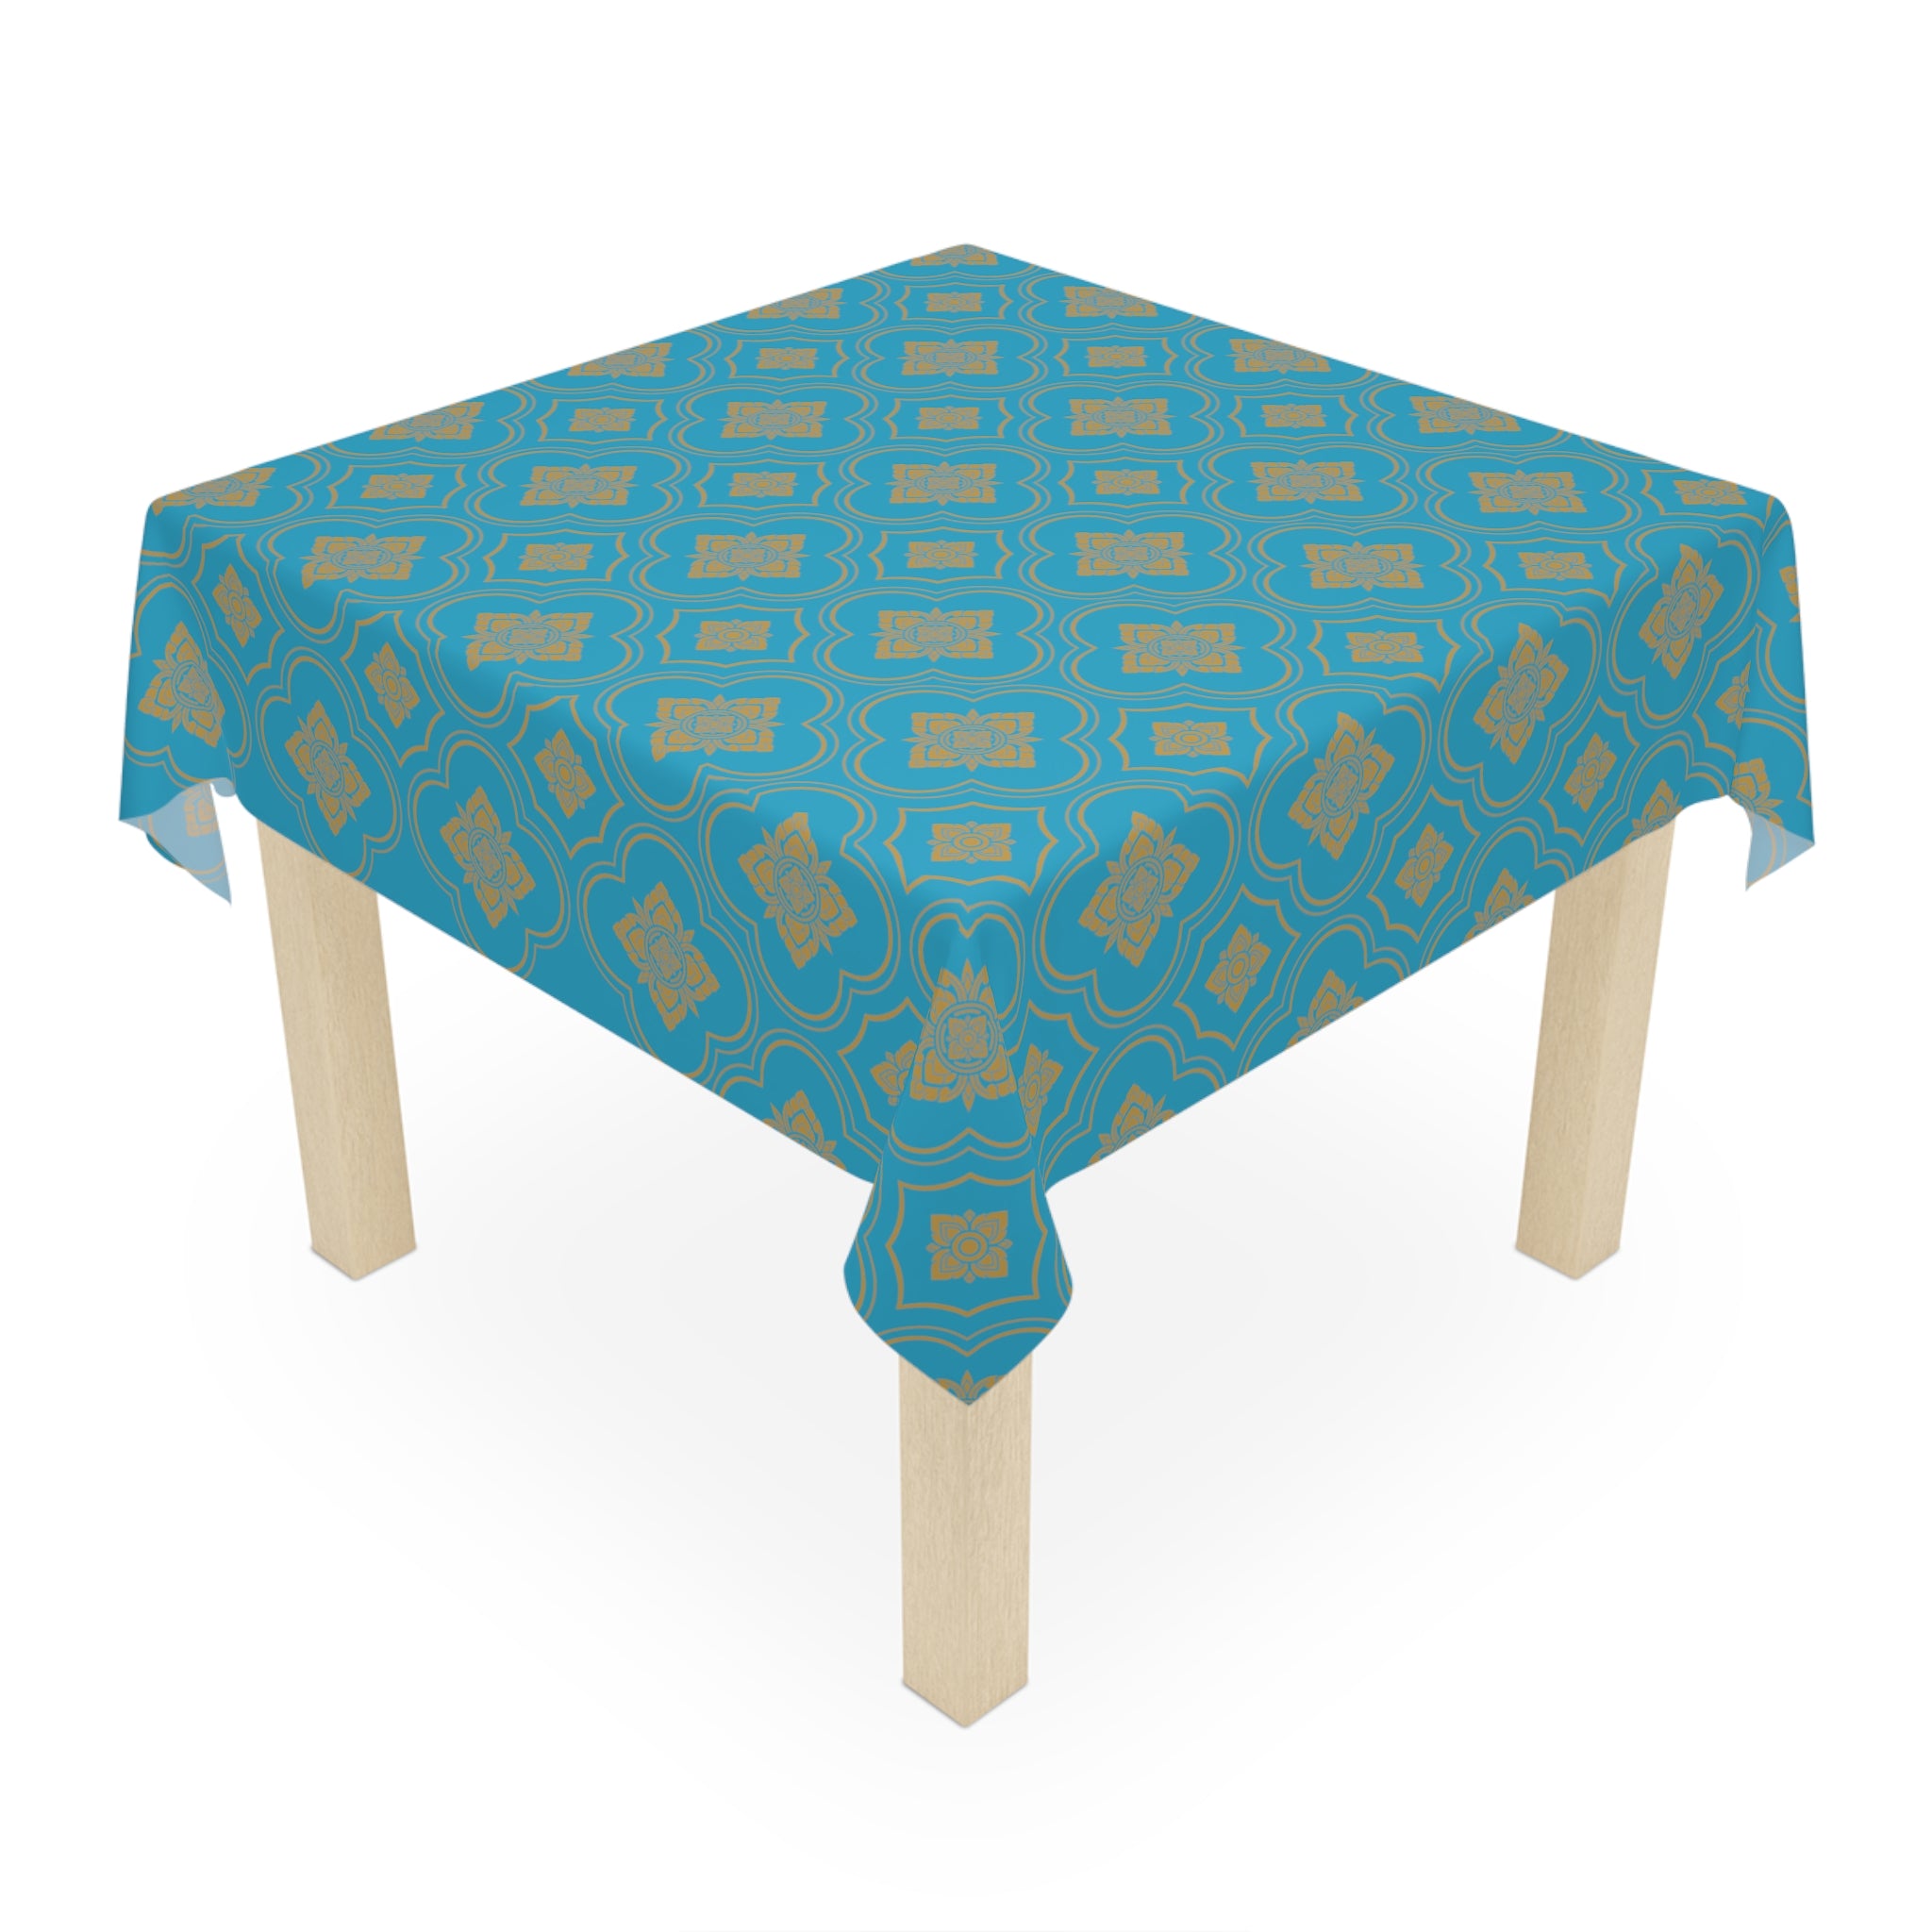 Elegant Tablecloth